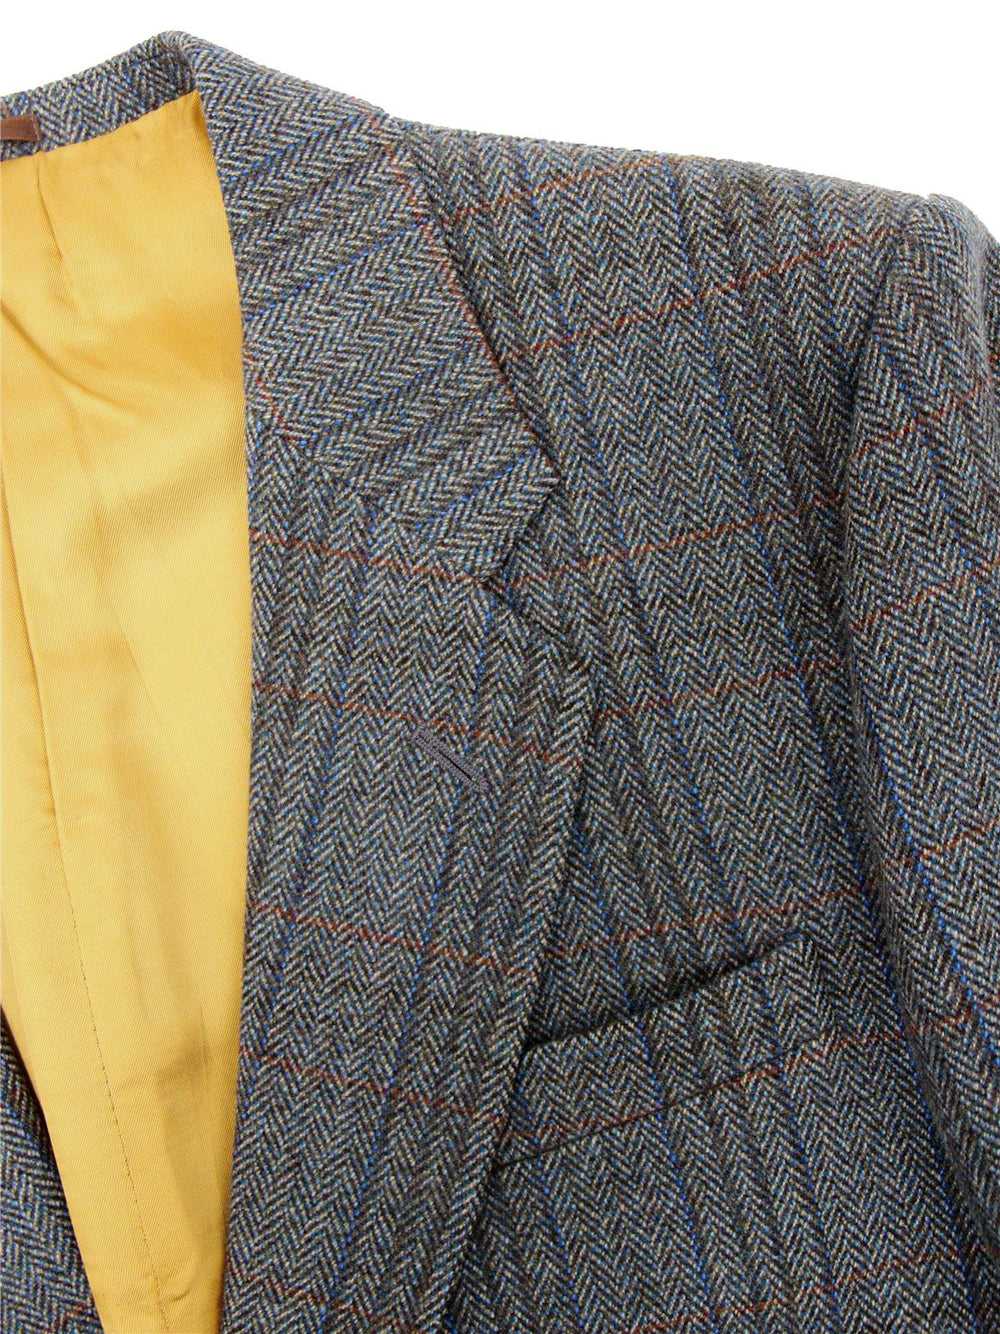 Vintage Saxony Herringbone Check Tweed Jacket - image 3